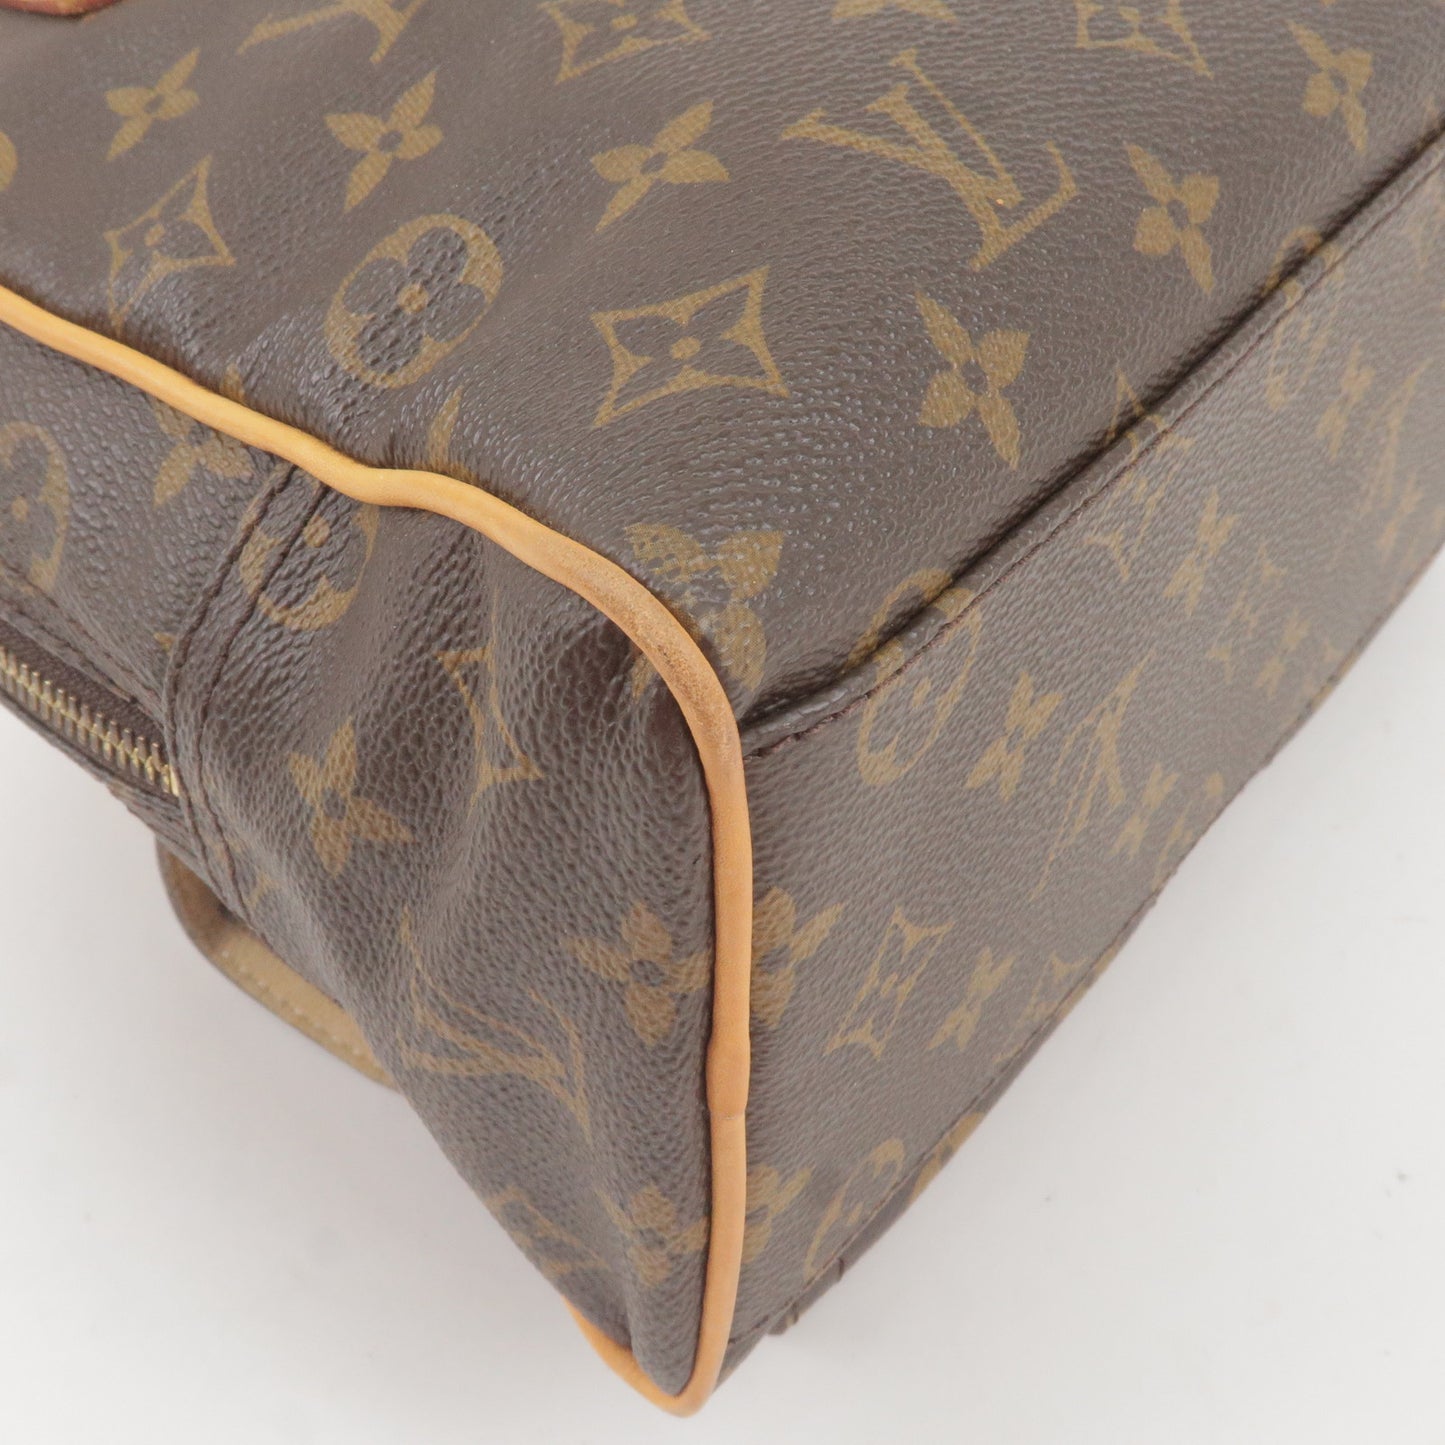 Louis-Vuitton-Monogram-Manhattan-PM-Hand-Bag-M40026